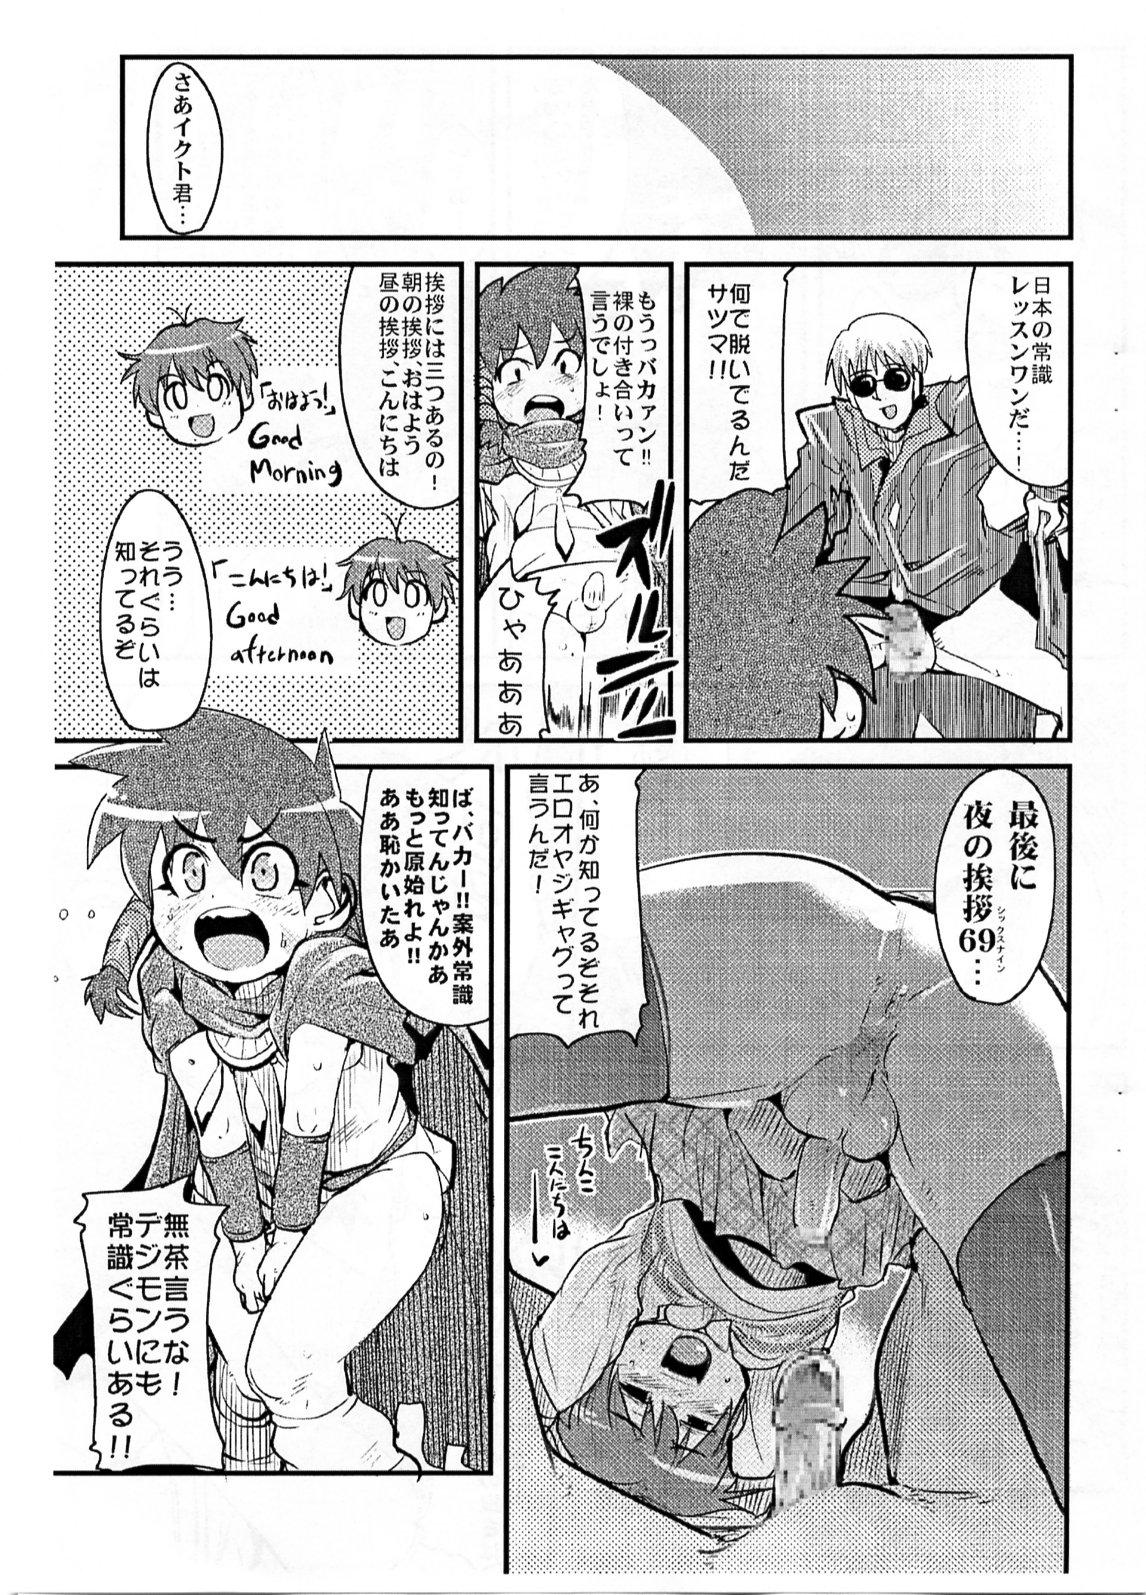 Condom Yaseiji ni iroiro oshieru hon nano da - Digimon savers Deutsche - Page 4